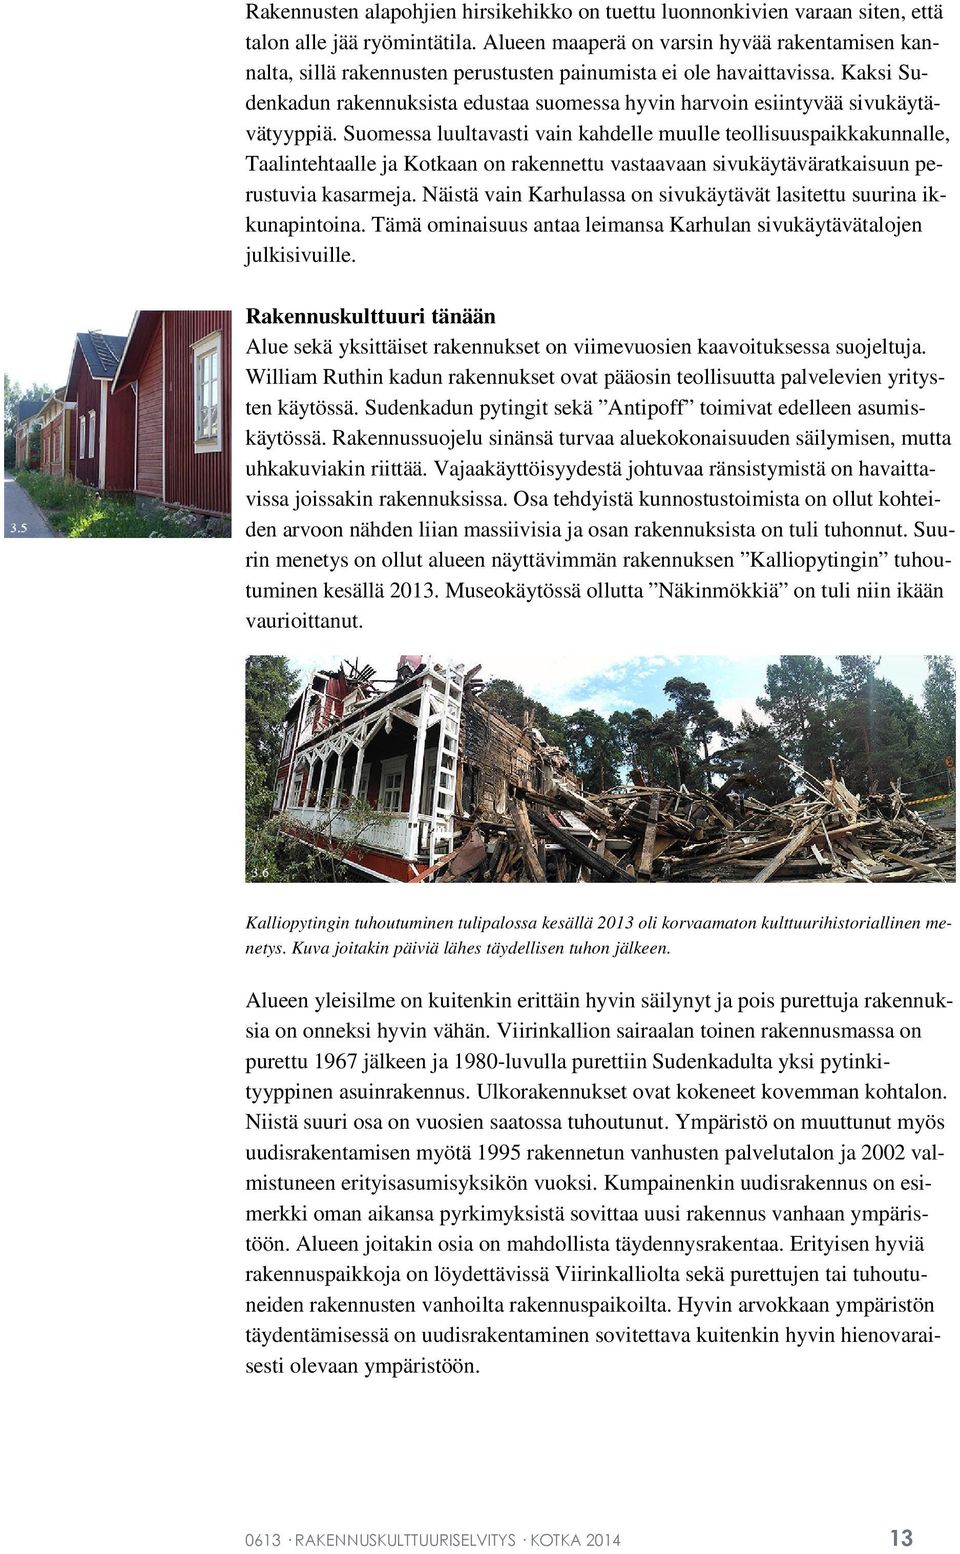 Kaksi Sudenkadun rakennuksista edustaa suomessa hyvin harvoin esiintyvää sivukäytävätyyppiä.